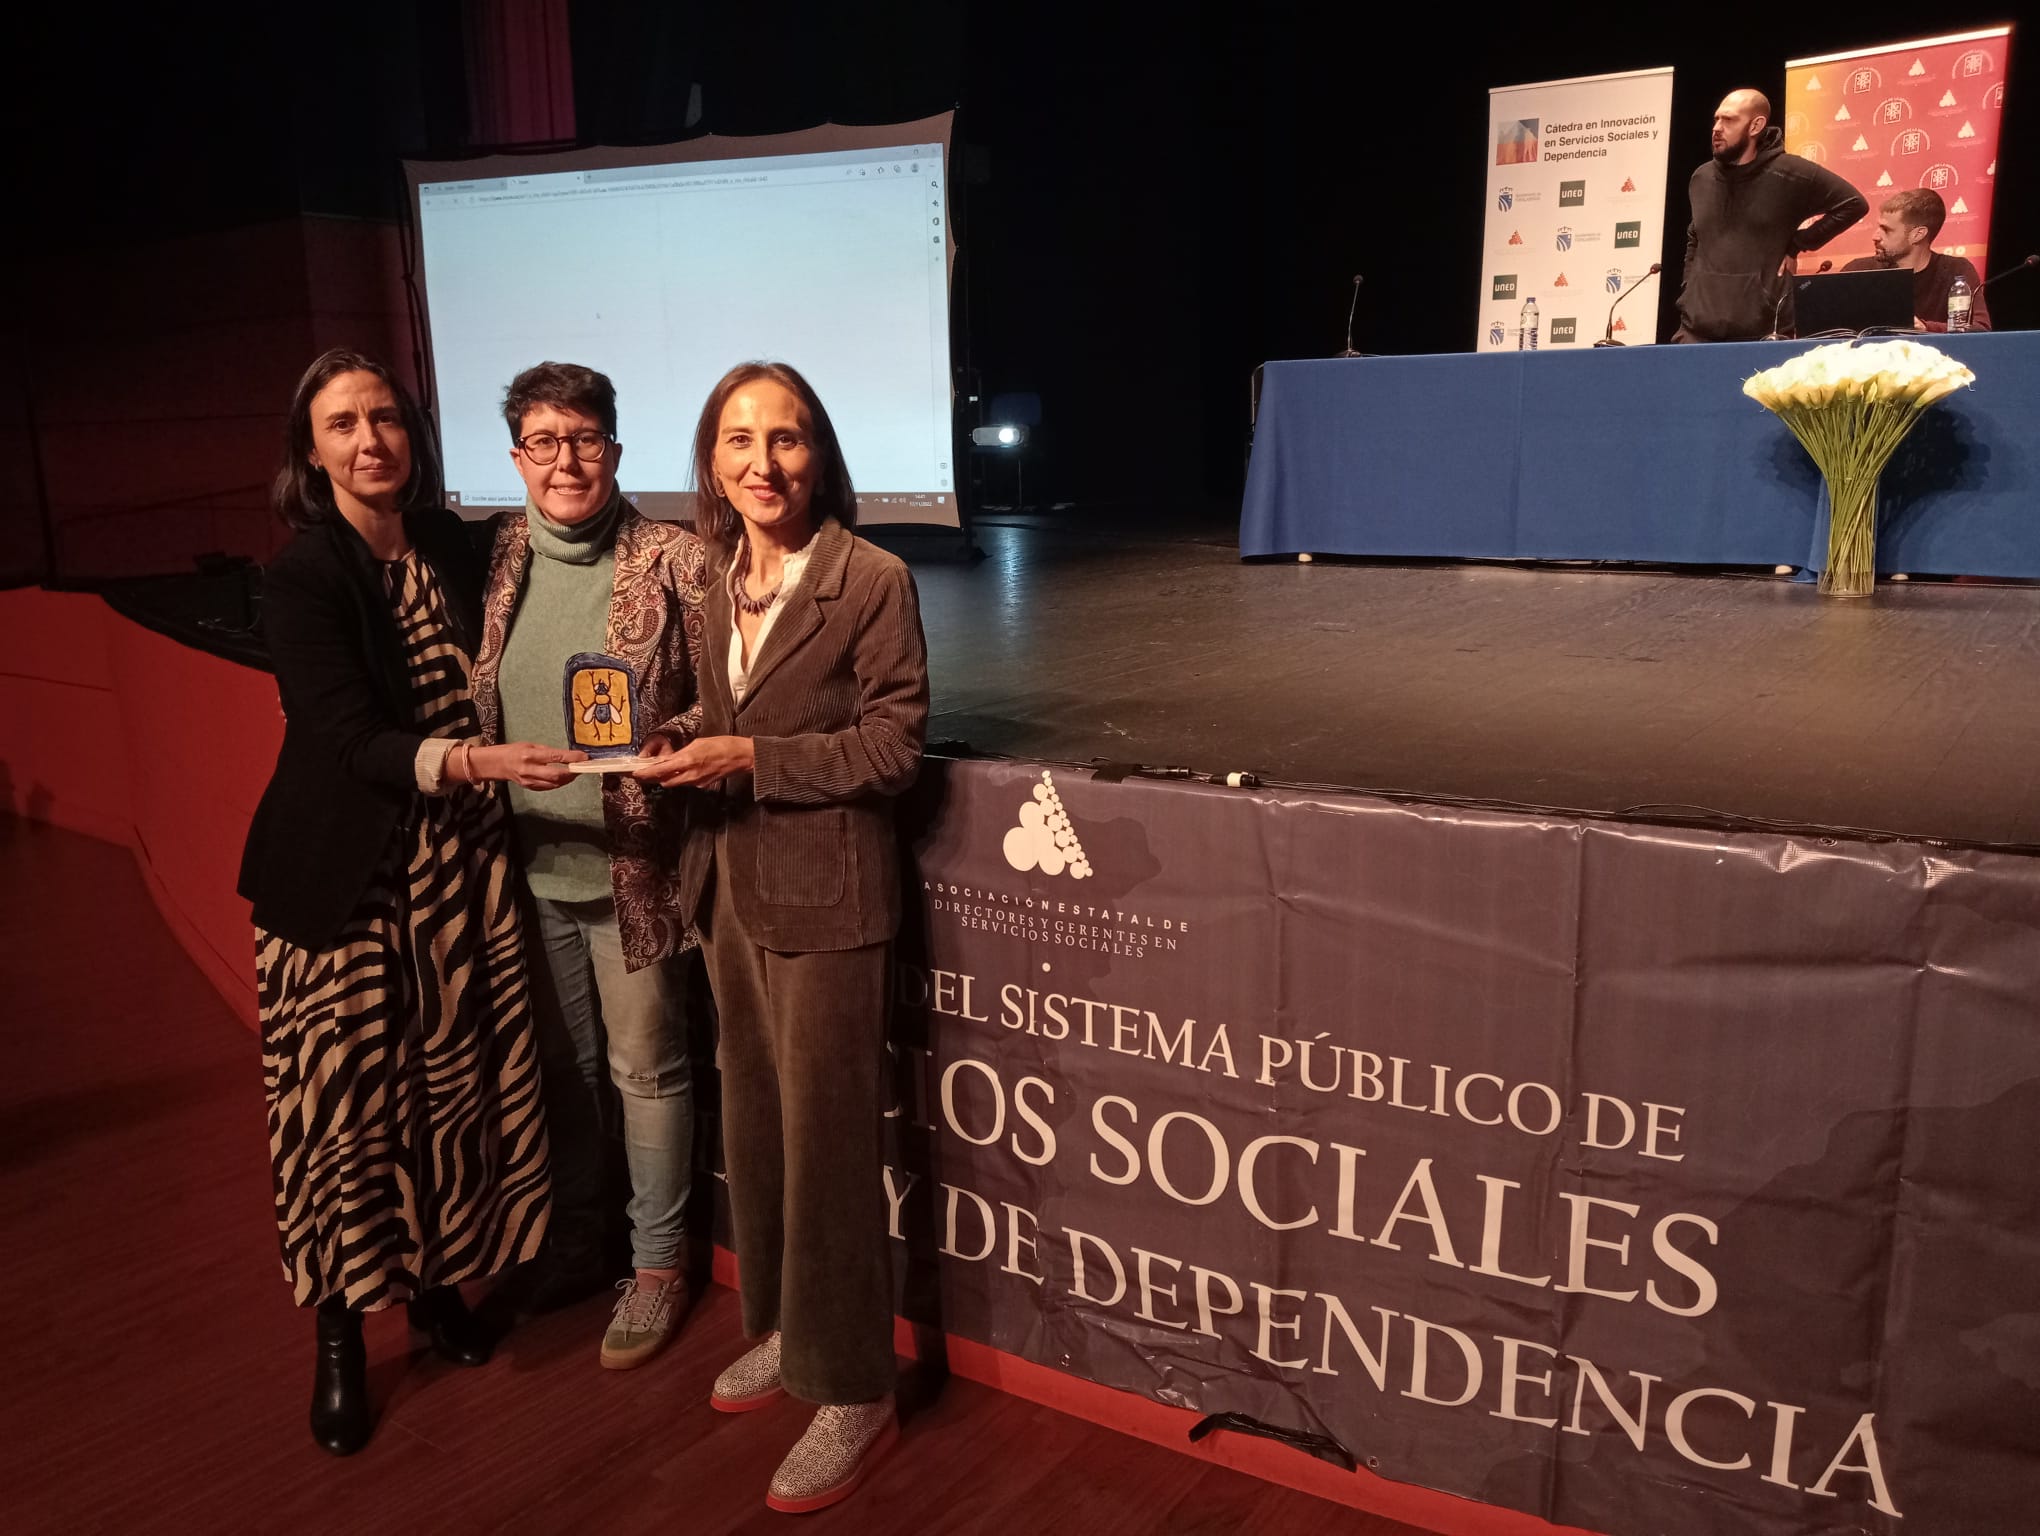 La delegada de Servicios Sociales, Alicia Galisteo, y la directora del centro, reciben el galardón a las Buenas Prácticas.